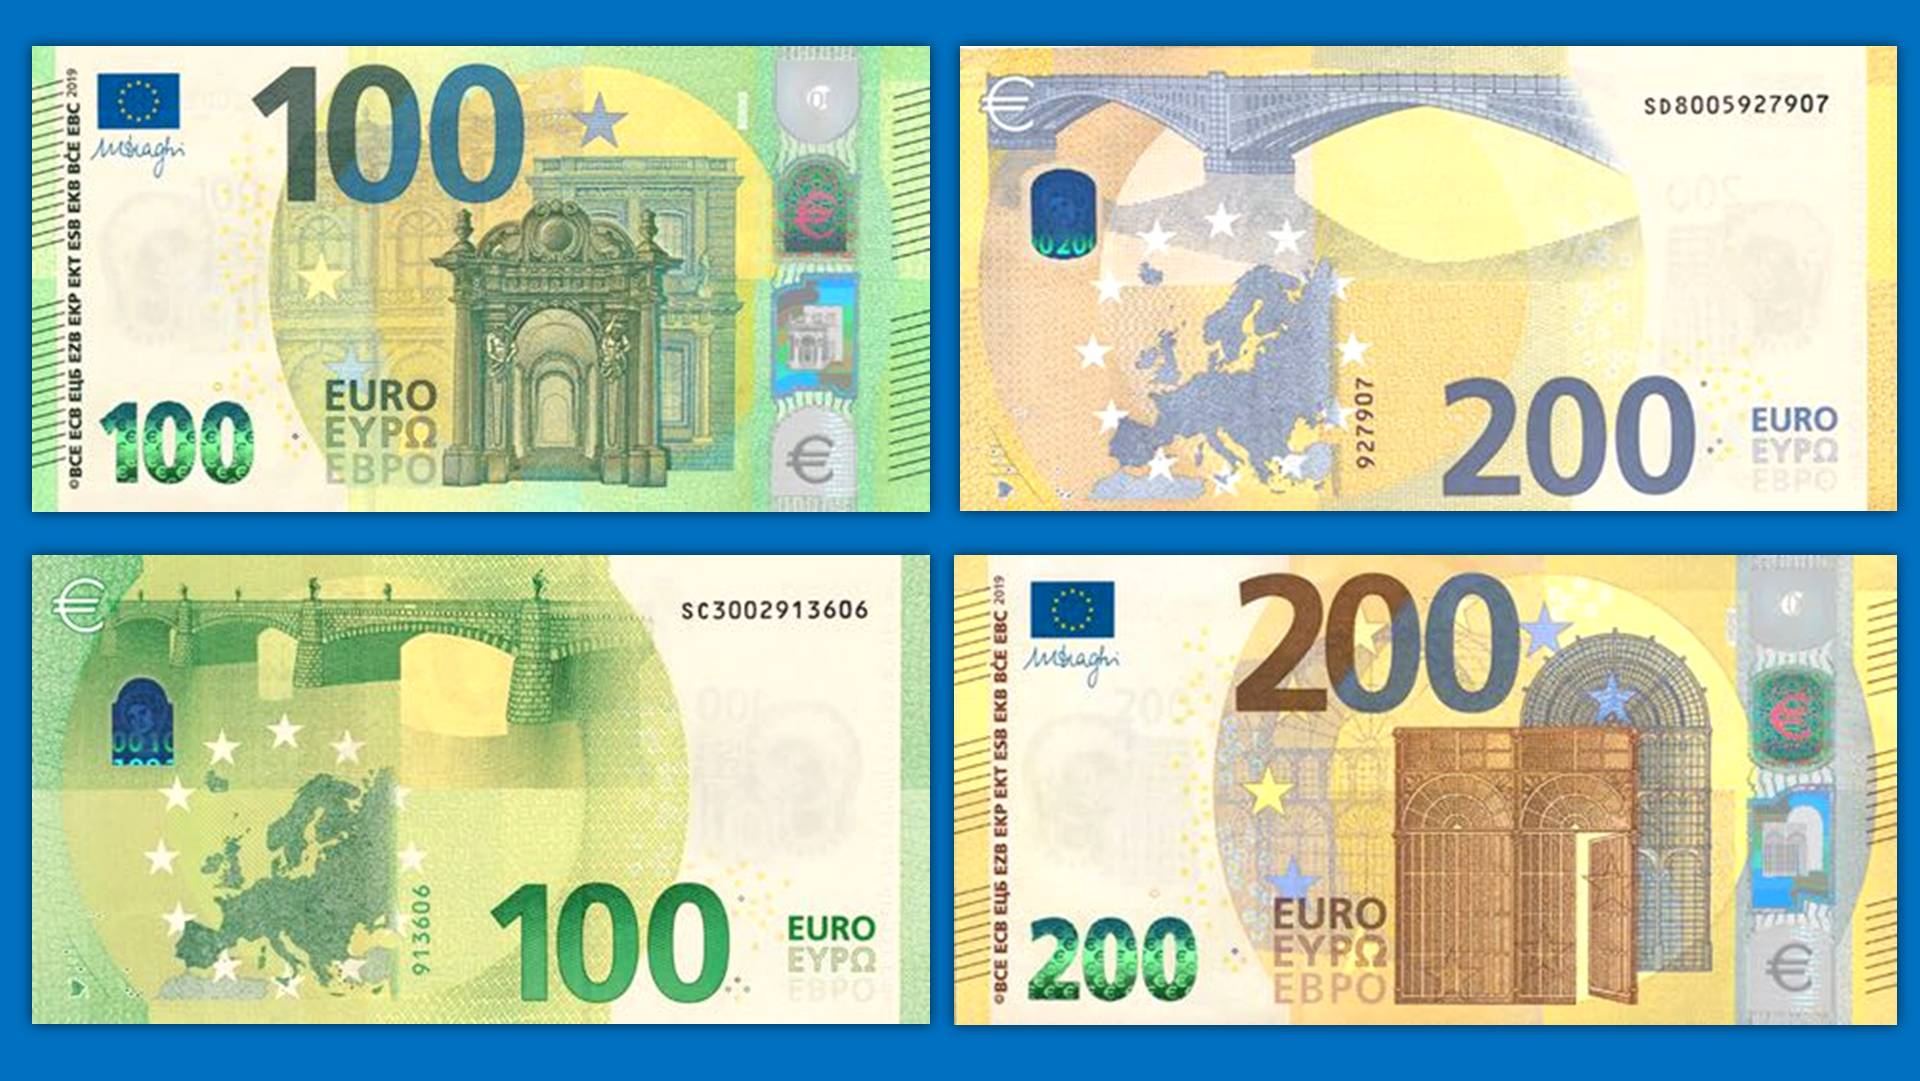 Купюры евро номиналы. Евро банкноты номинал 200. Банкноты евро нового образца 200. Банкноты евро нового образца 100 евро. Купюра 100 евро нового образца.